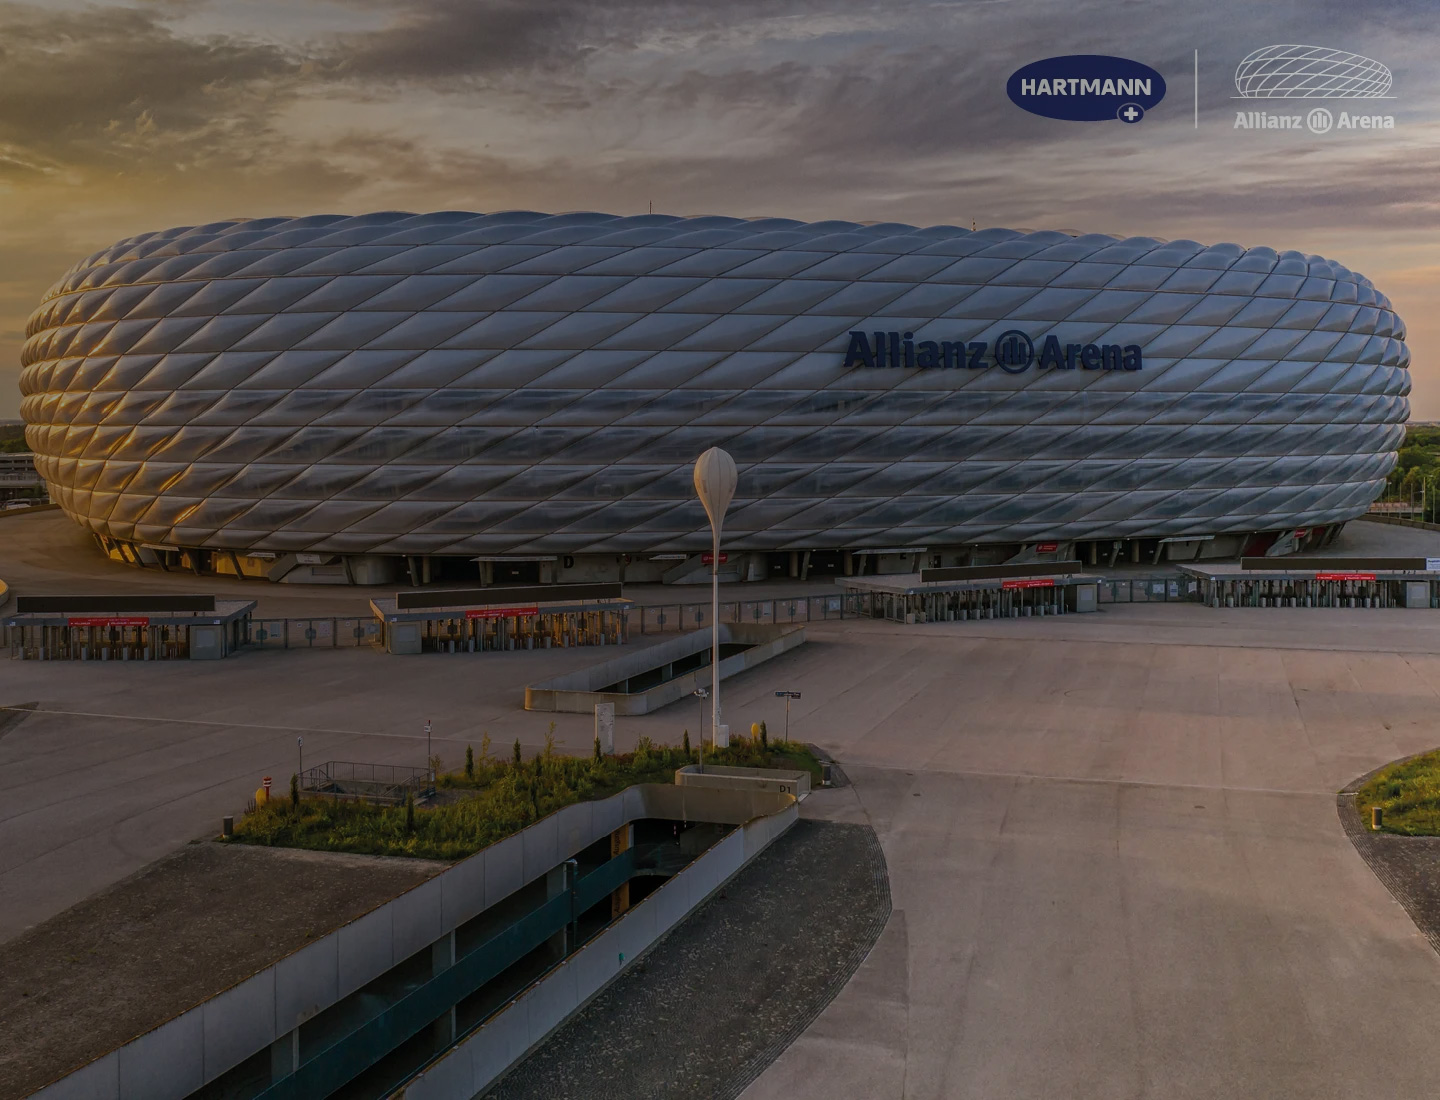 The Allianz Arena in Munich